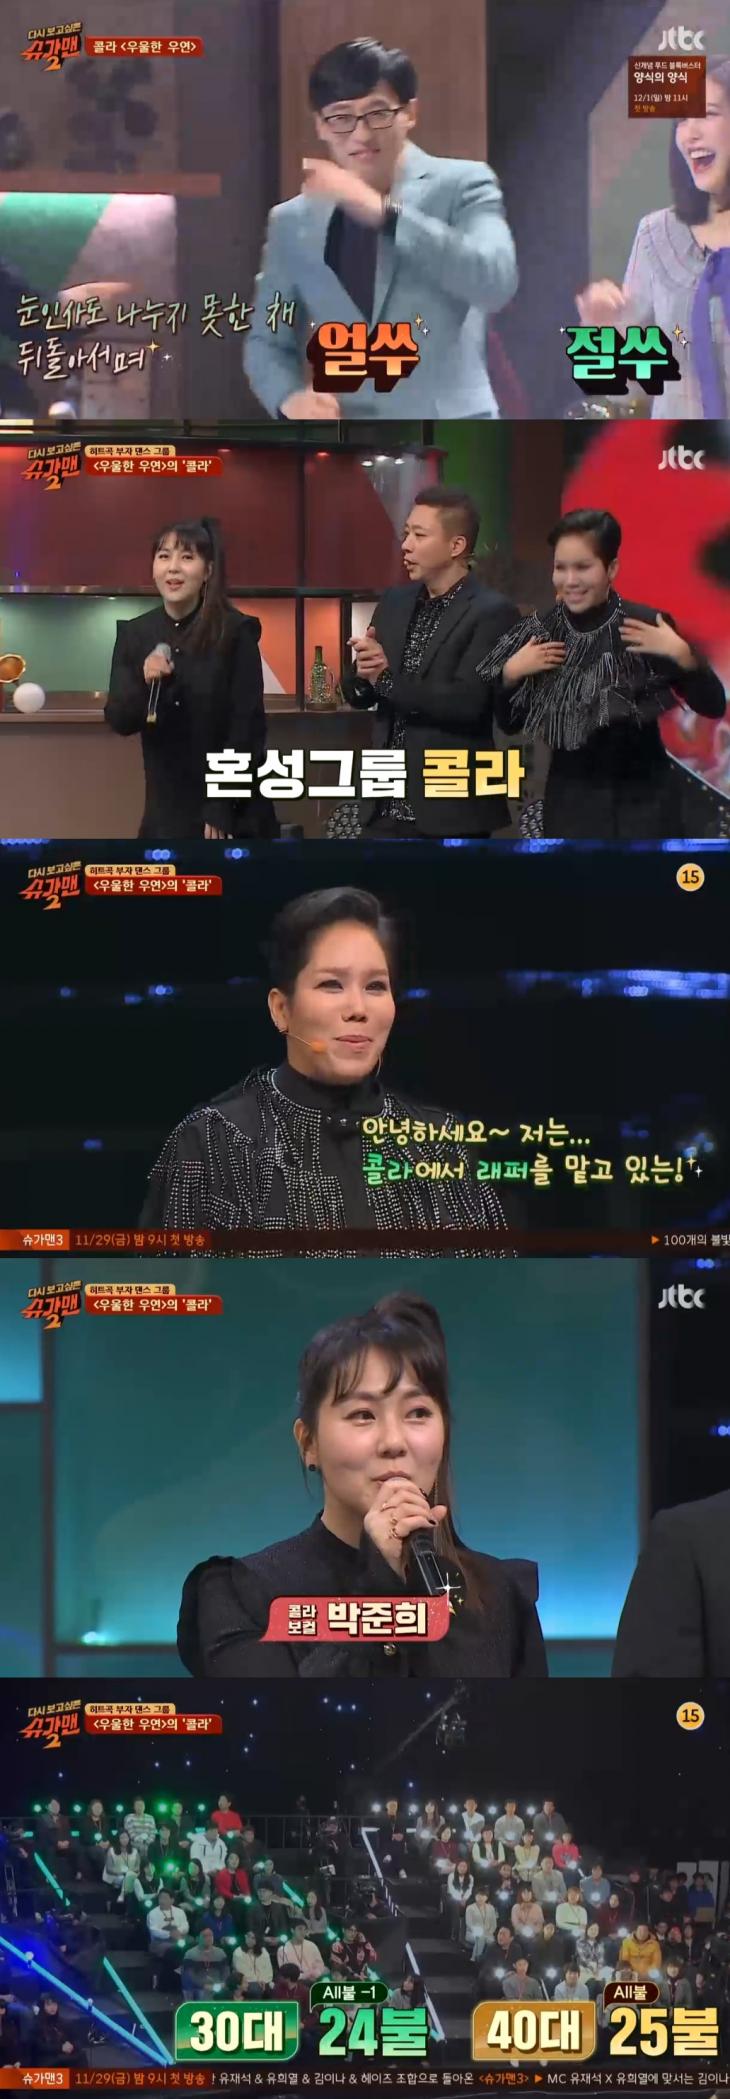 JTBC 예능프로그램 '슈가맨3' 다시보기 방송